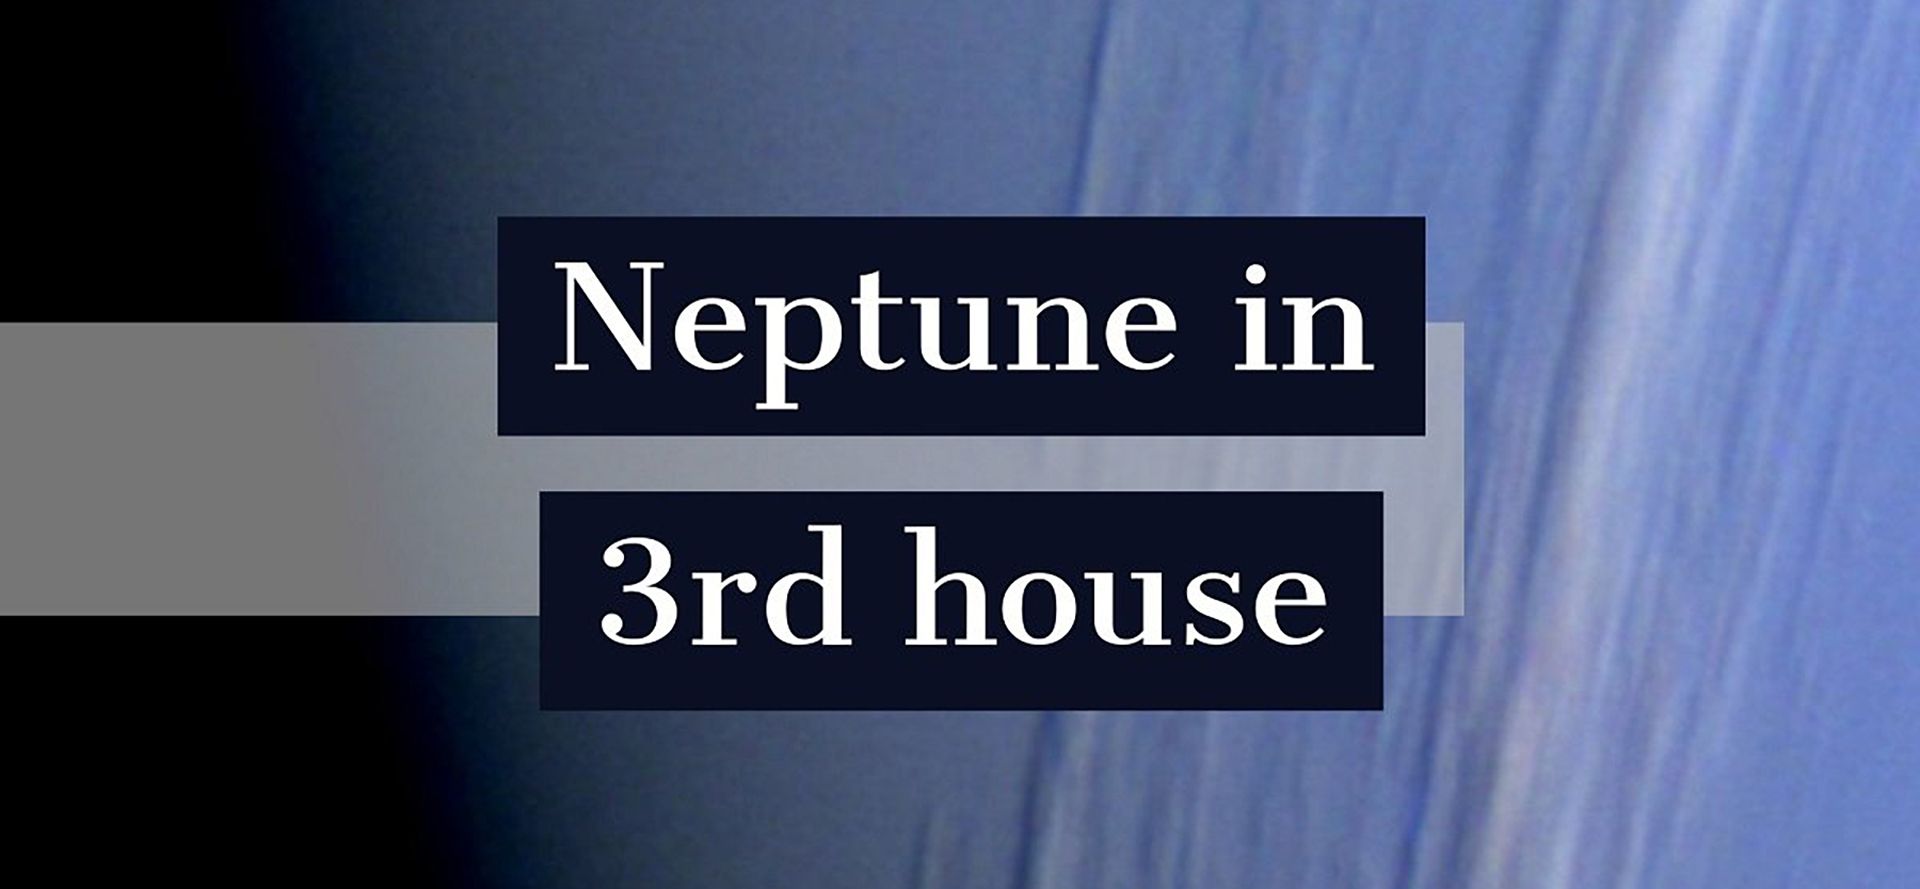 Neptune in 3rd house.